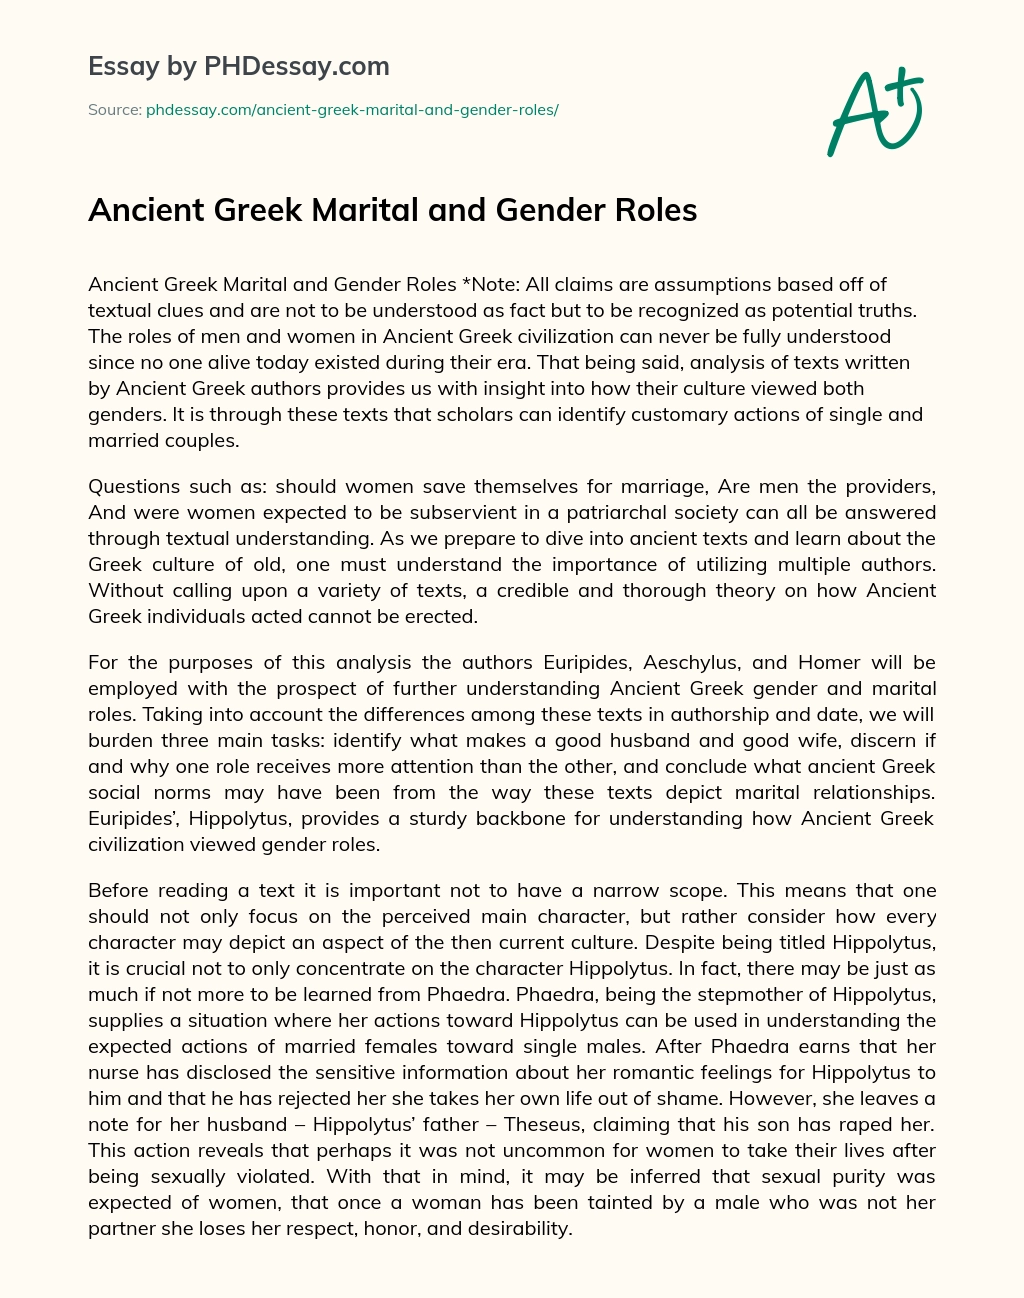 Ancient Greek Marital and Gender Roles essay